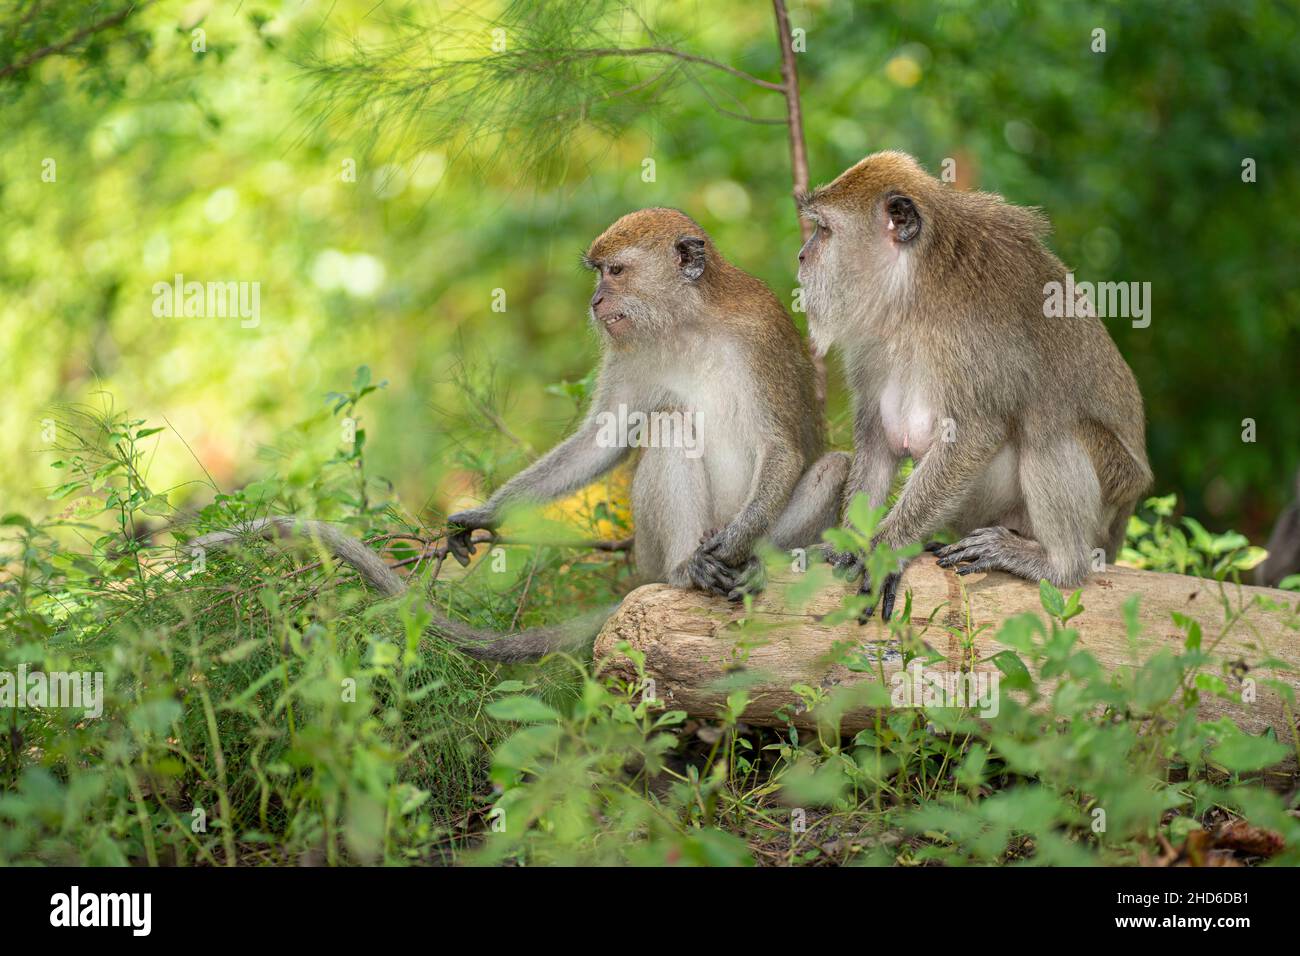 Zwei Affen sitzen zusammen auf einem gefallenen Baumstamm. Selektive Fokuspunkte Stockfoto